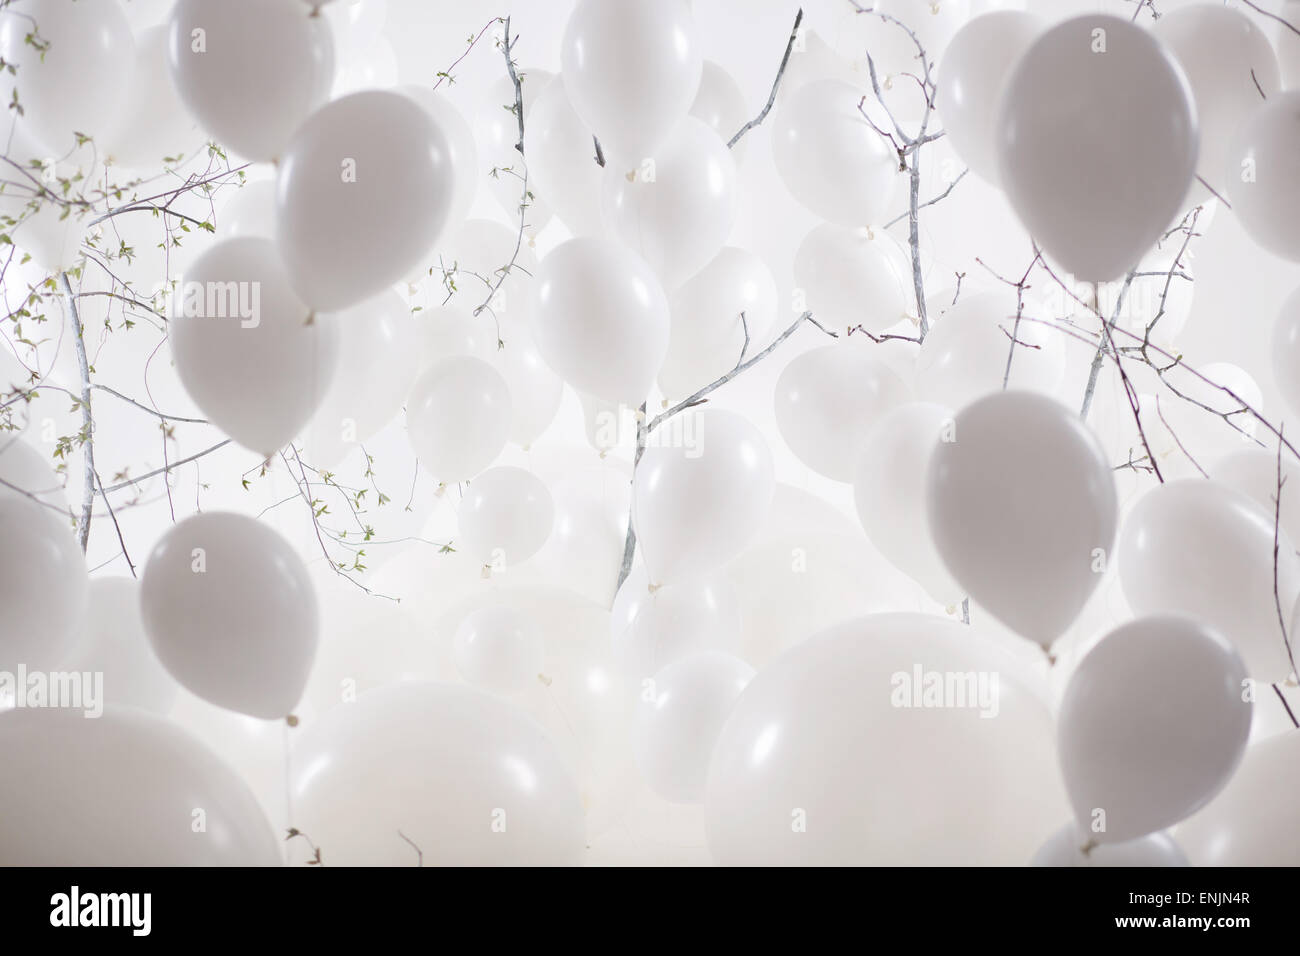 Présentation d'une image de fond ballon blanc Photo Stock - Alamy